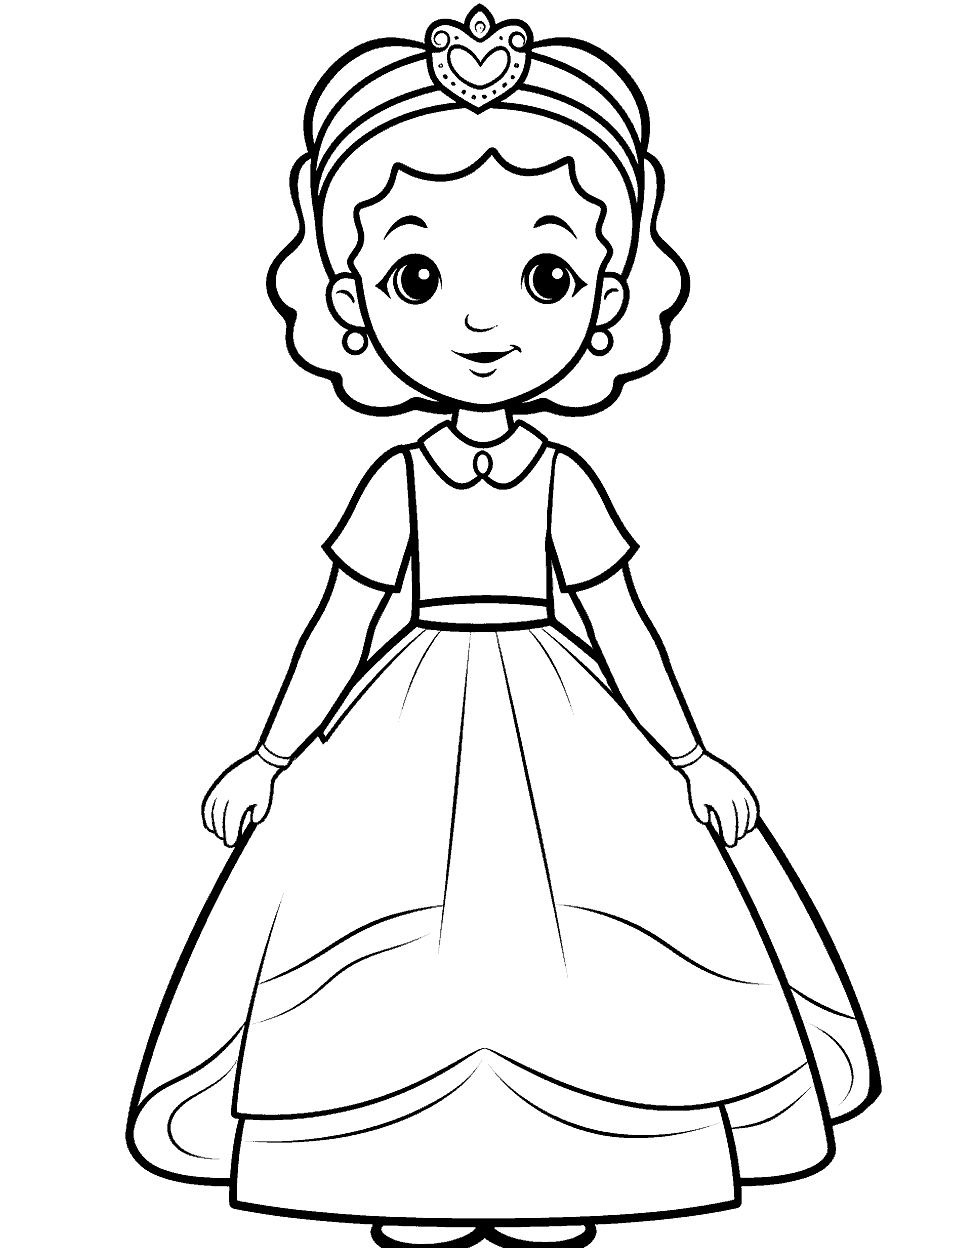 Royal Princess Coloring Page - A princess standing wearing a royal dress.